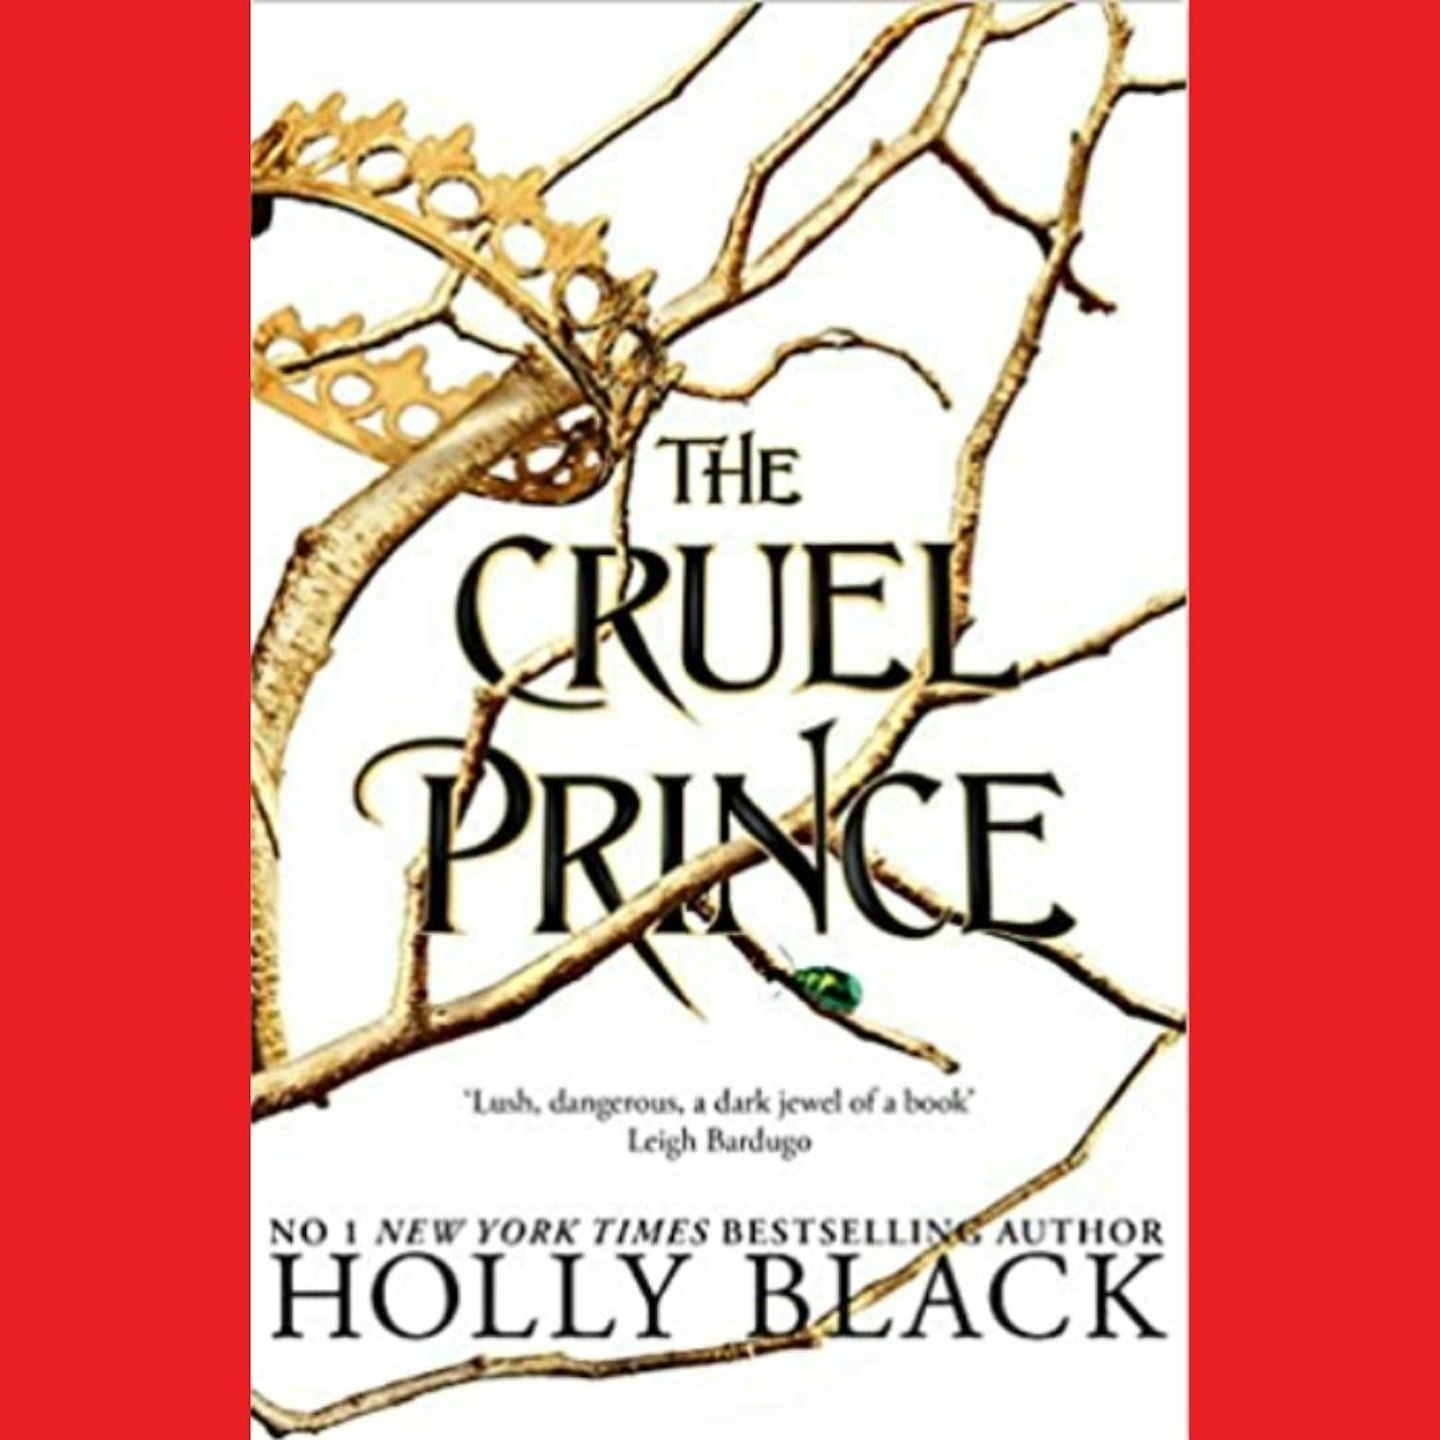 #BookTok The Cruel Prince by Holly Black